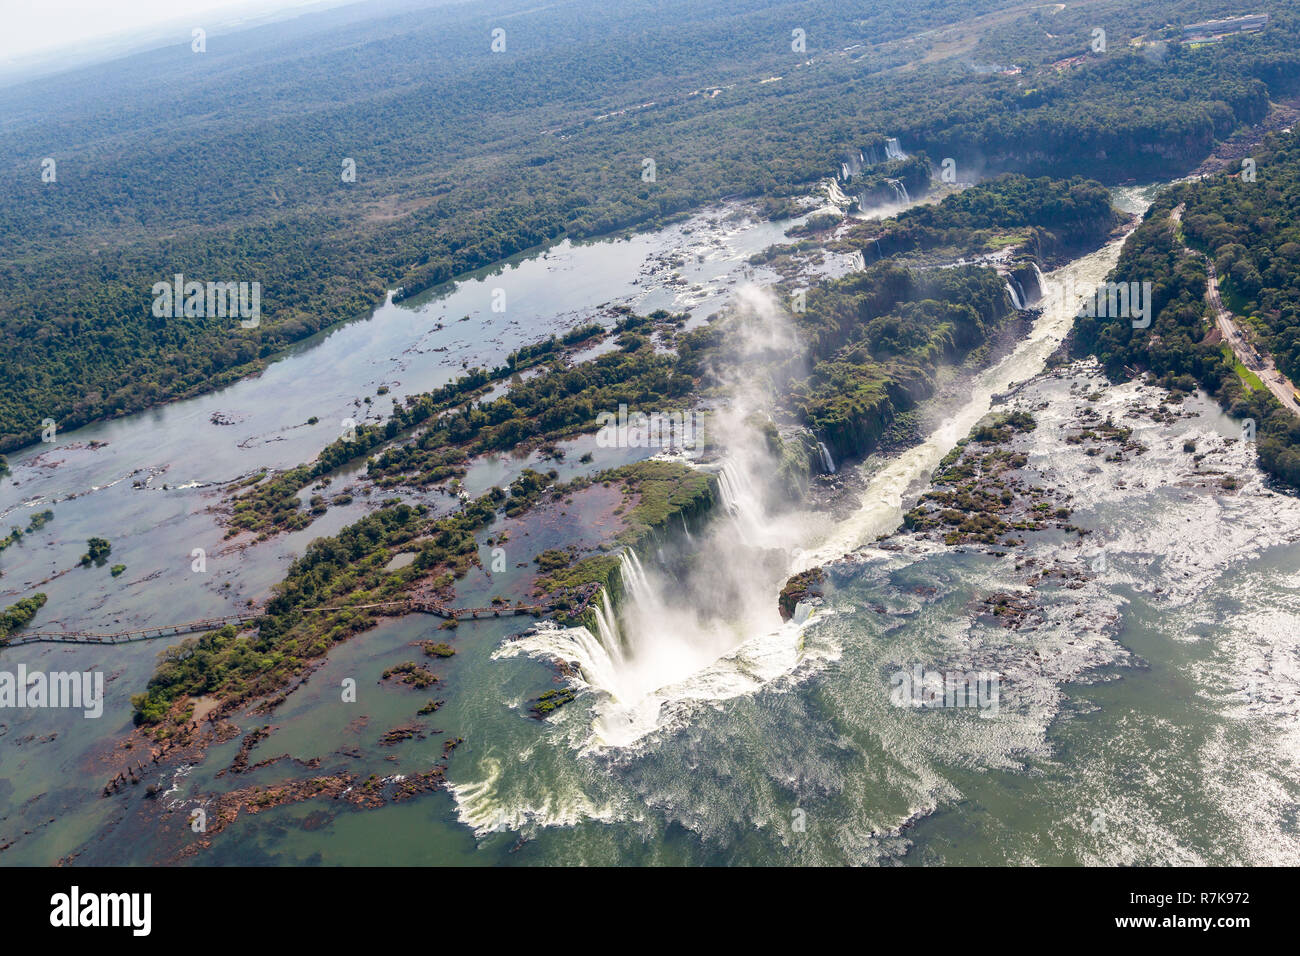 Aerial Vogelperspektive Panorama der Iguazu Wasserfälle von oben, von einem Hubschrauber. Grenze von Brasilien und Argentinien. Iguassu, Iguacu Wasserfälle. Stockfoto